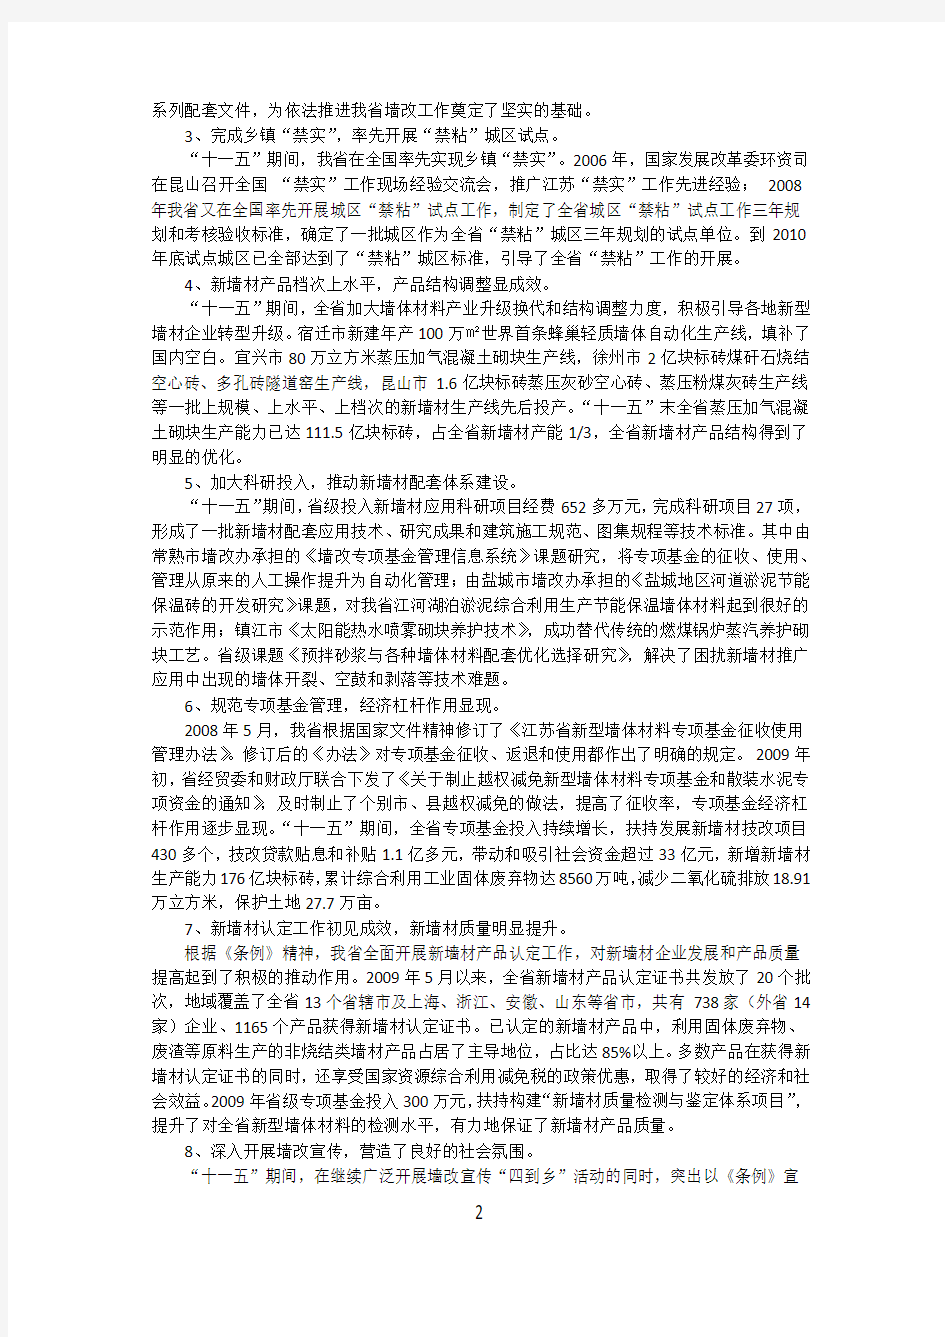 关于印发江苏省墙体材料革新十二五发展规划的通知